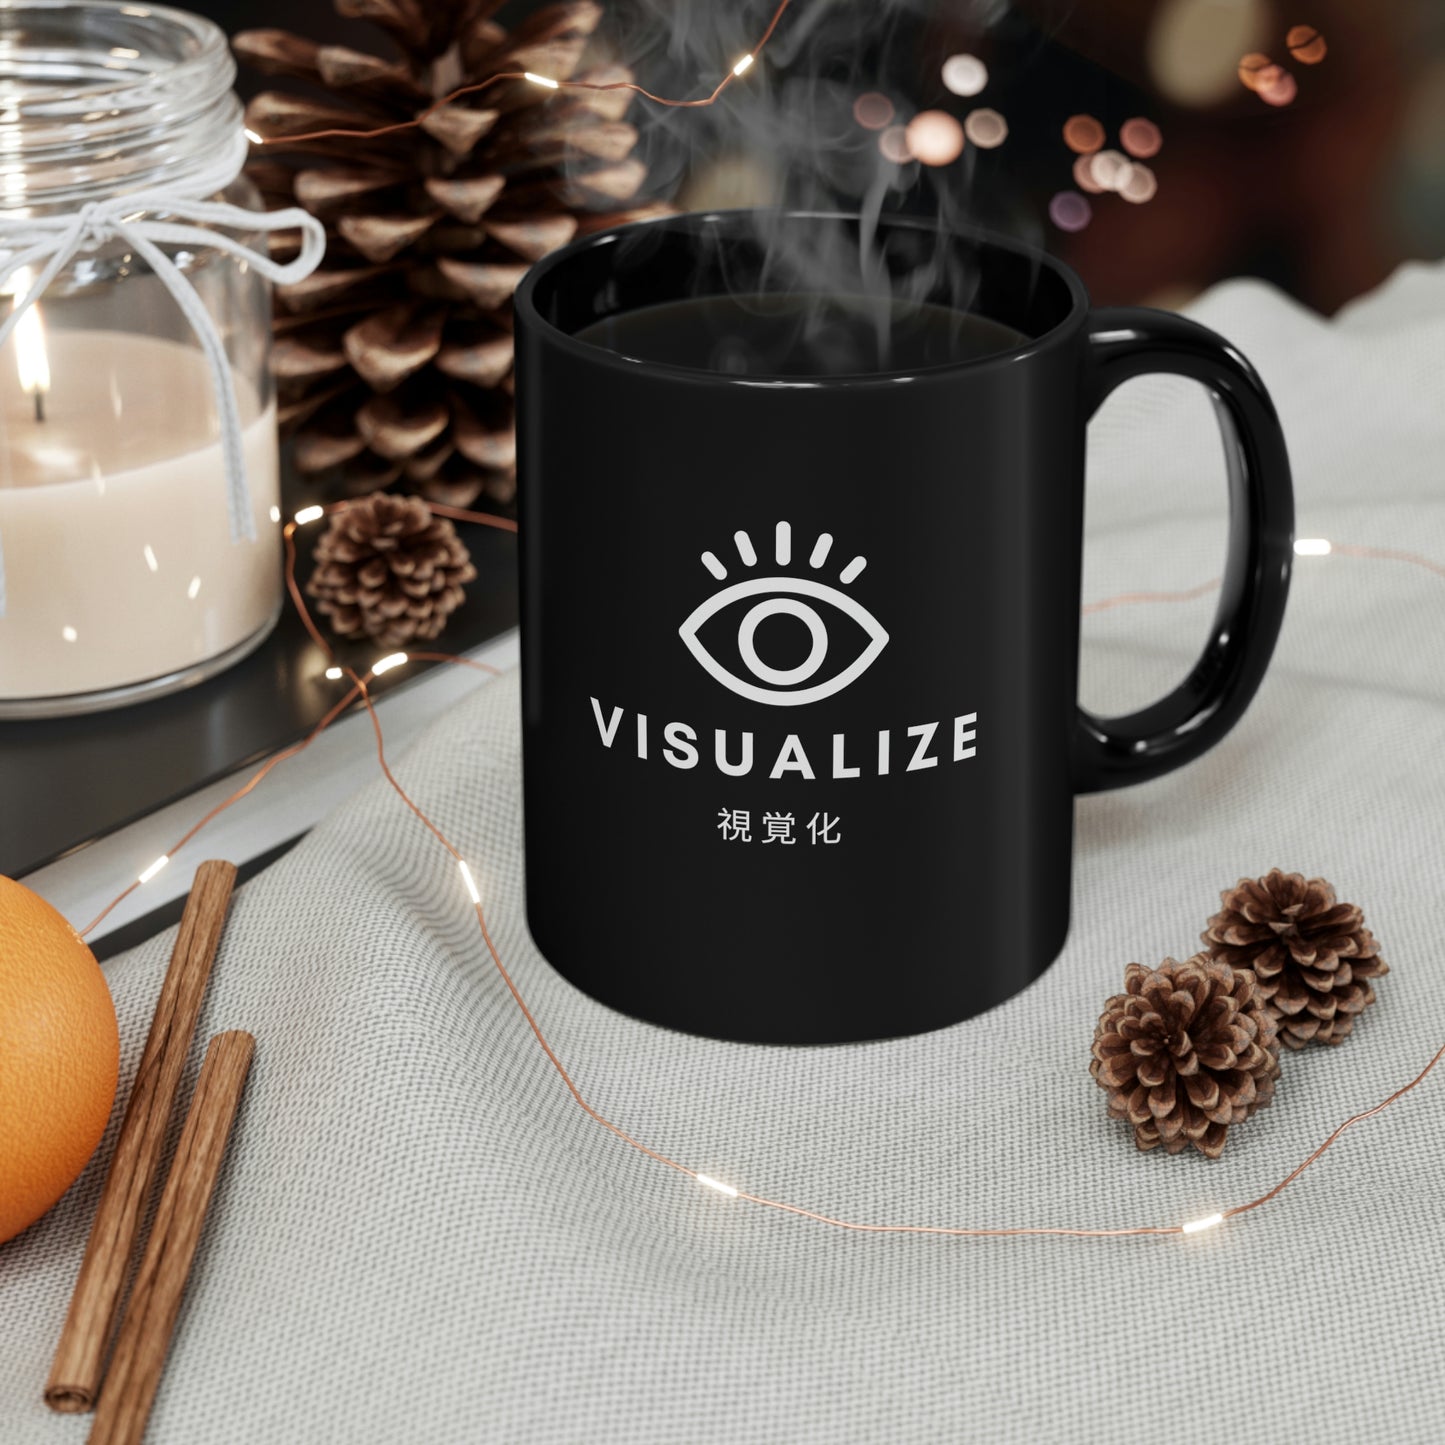 'Visualize' Mug